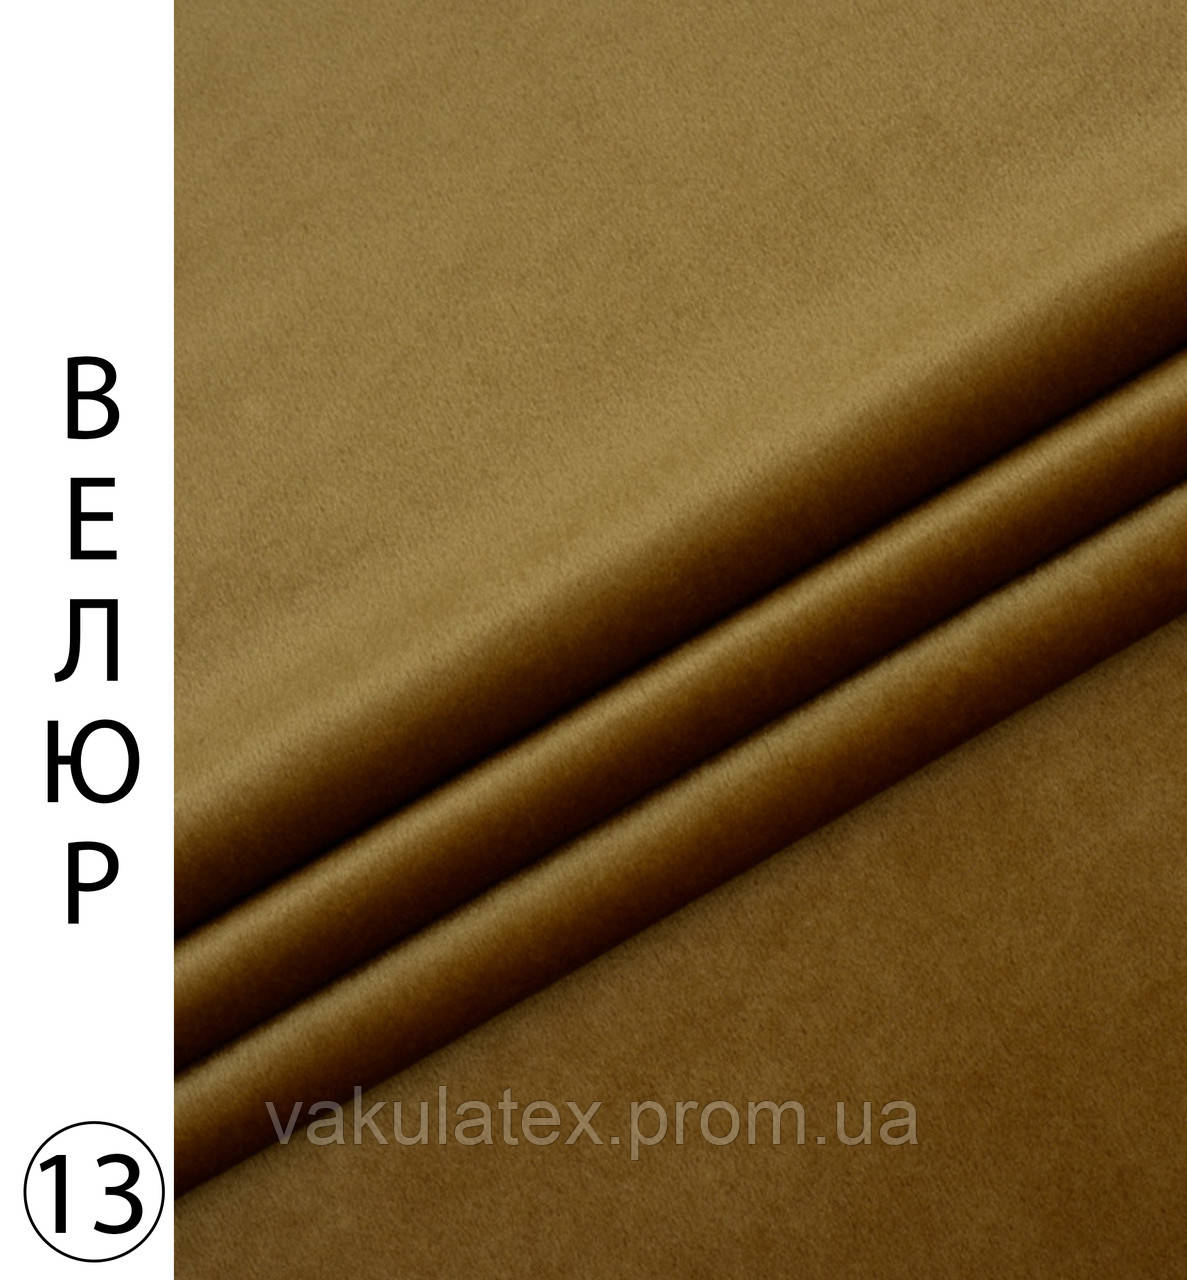 Мебелева тканина велюр  Тканина для перетяжки меблів декорування Однотонна тканина